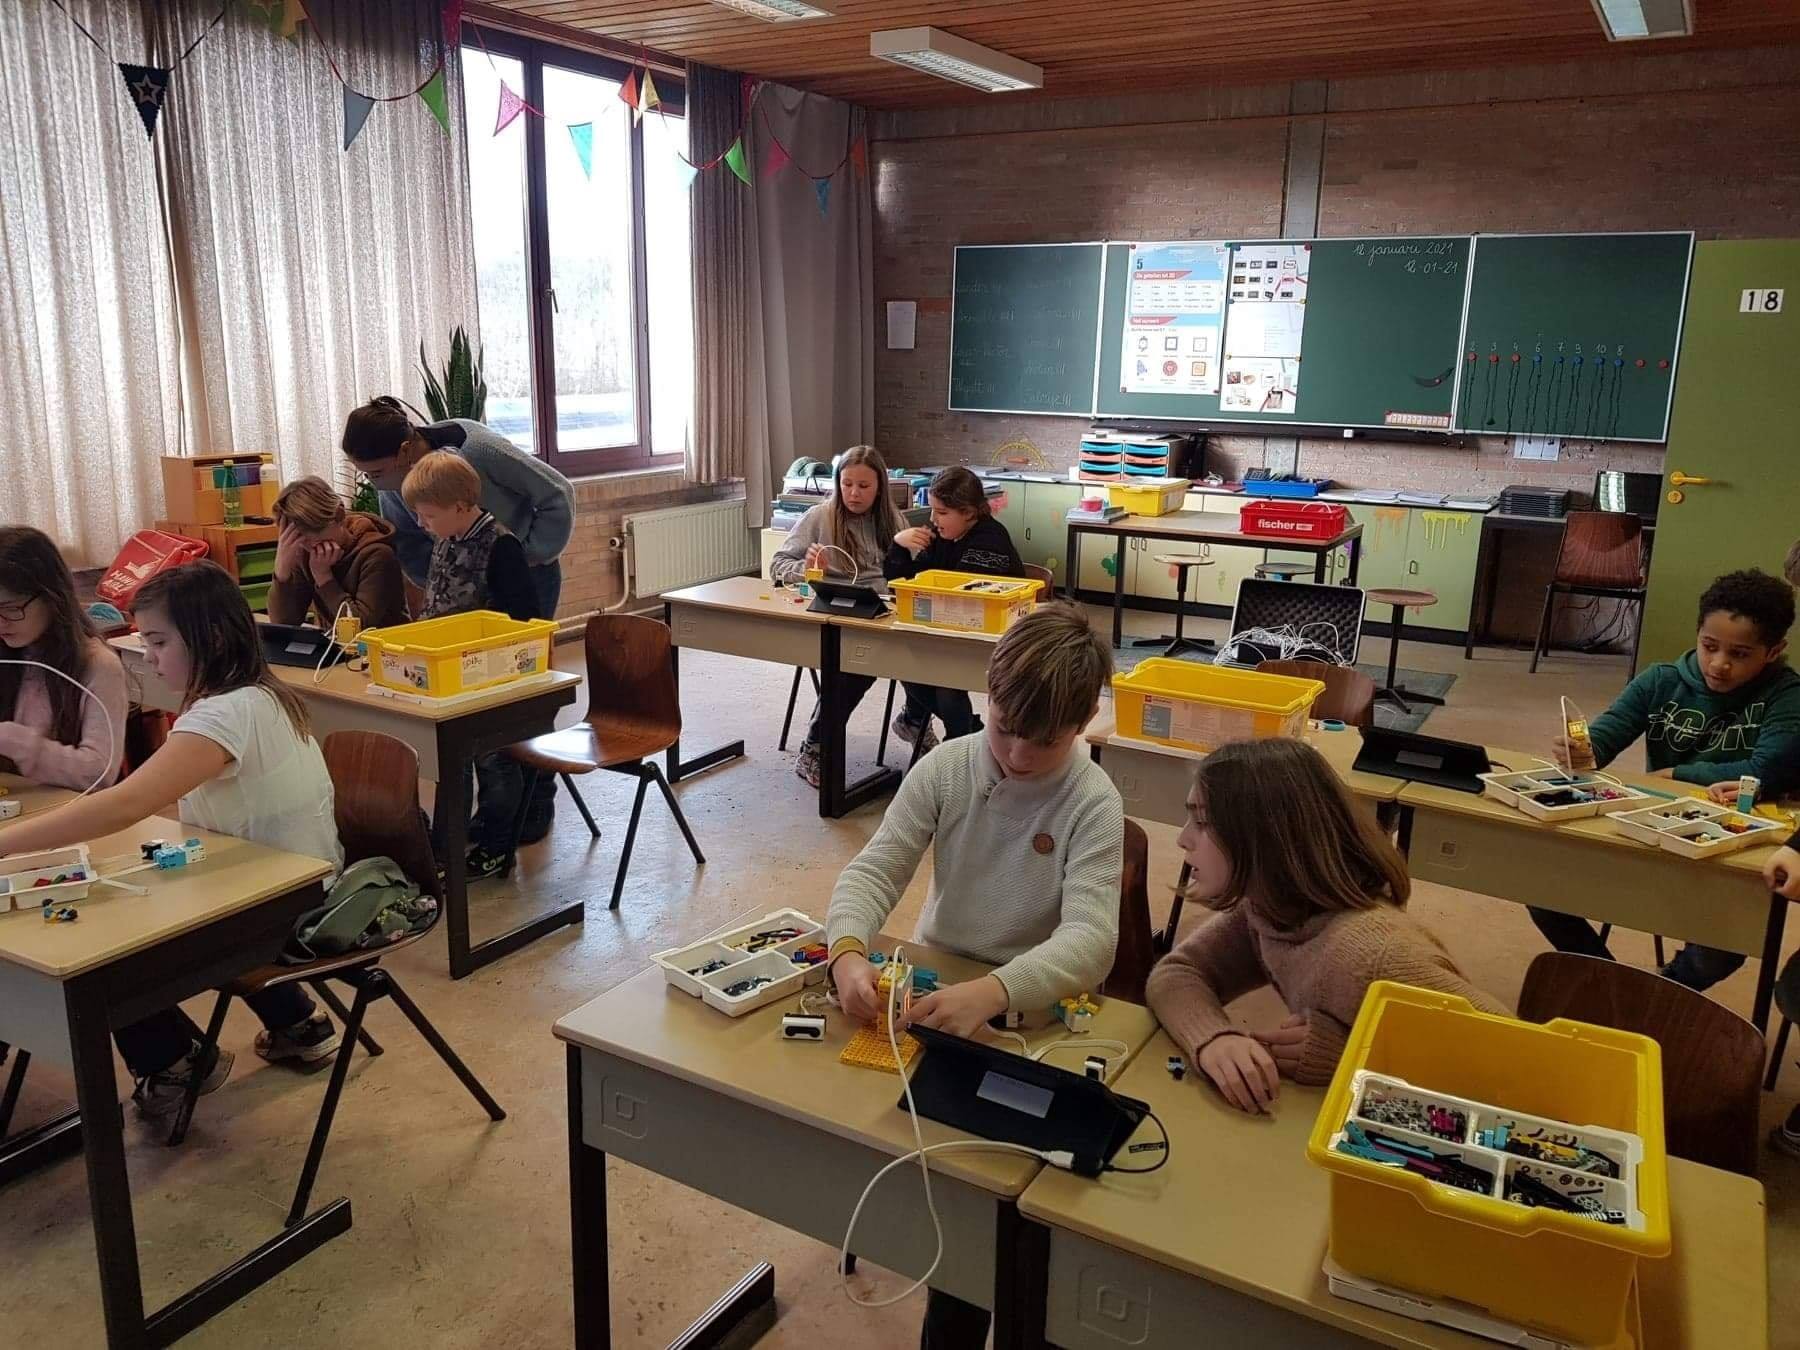 Einsteens@Work in Tienerschool De Haan